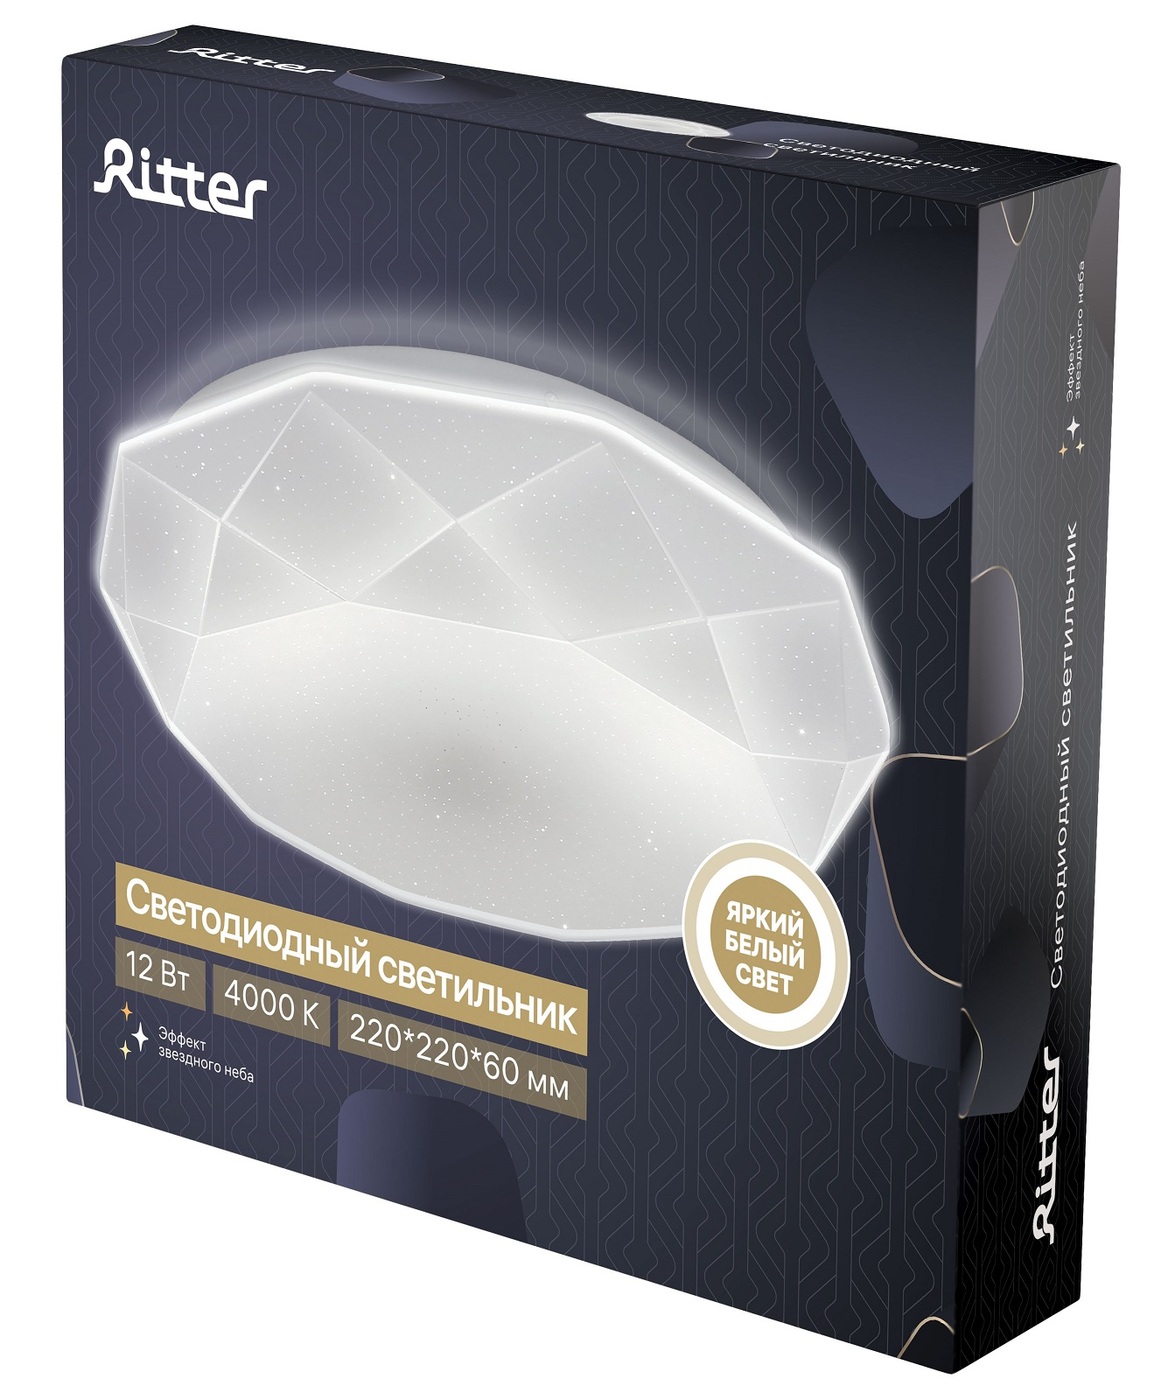 Потолочный светильник Ritter Brilliance 52100 6